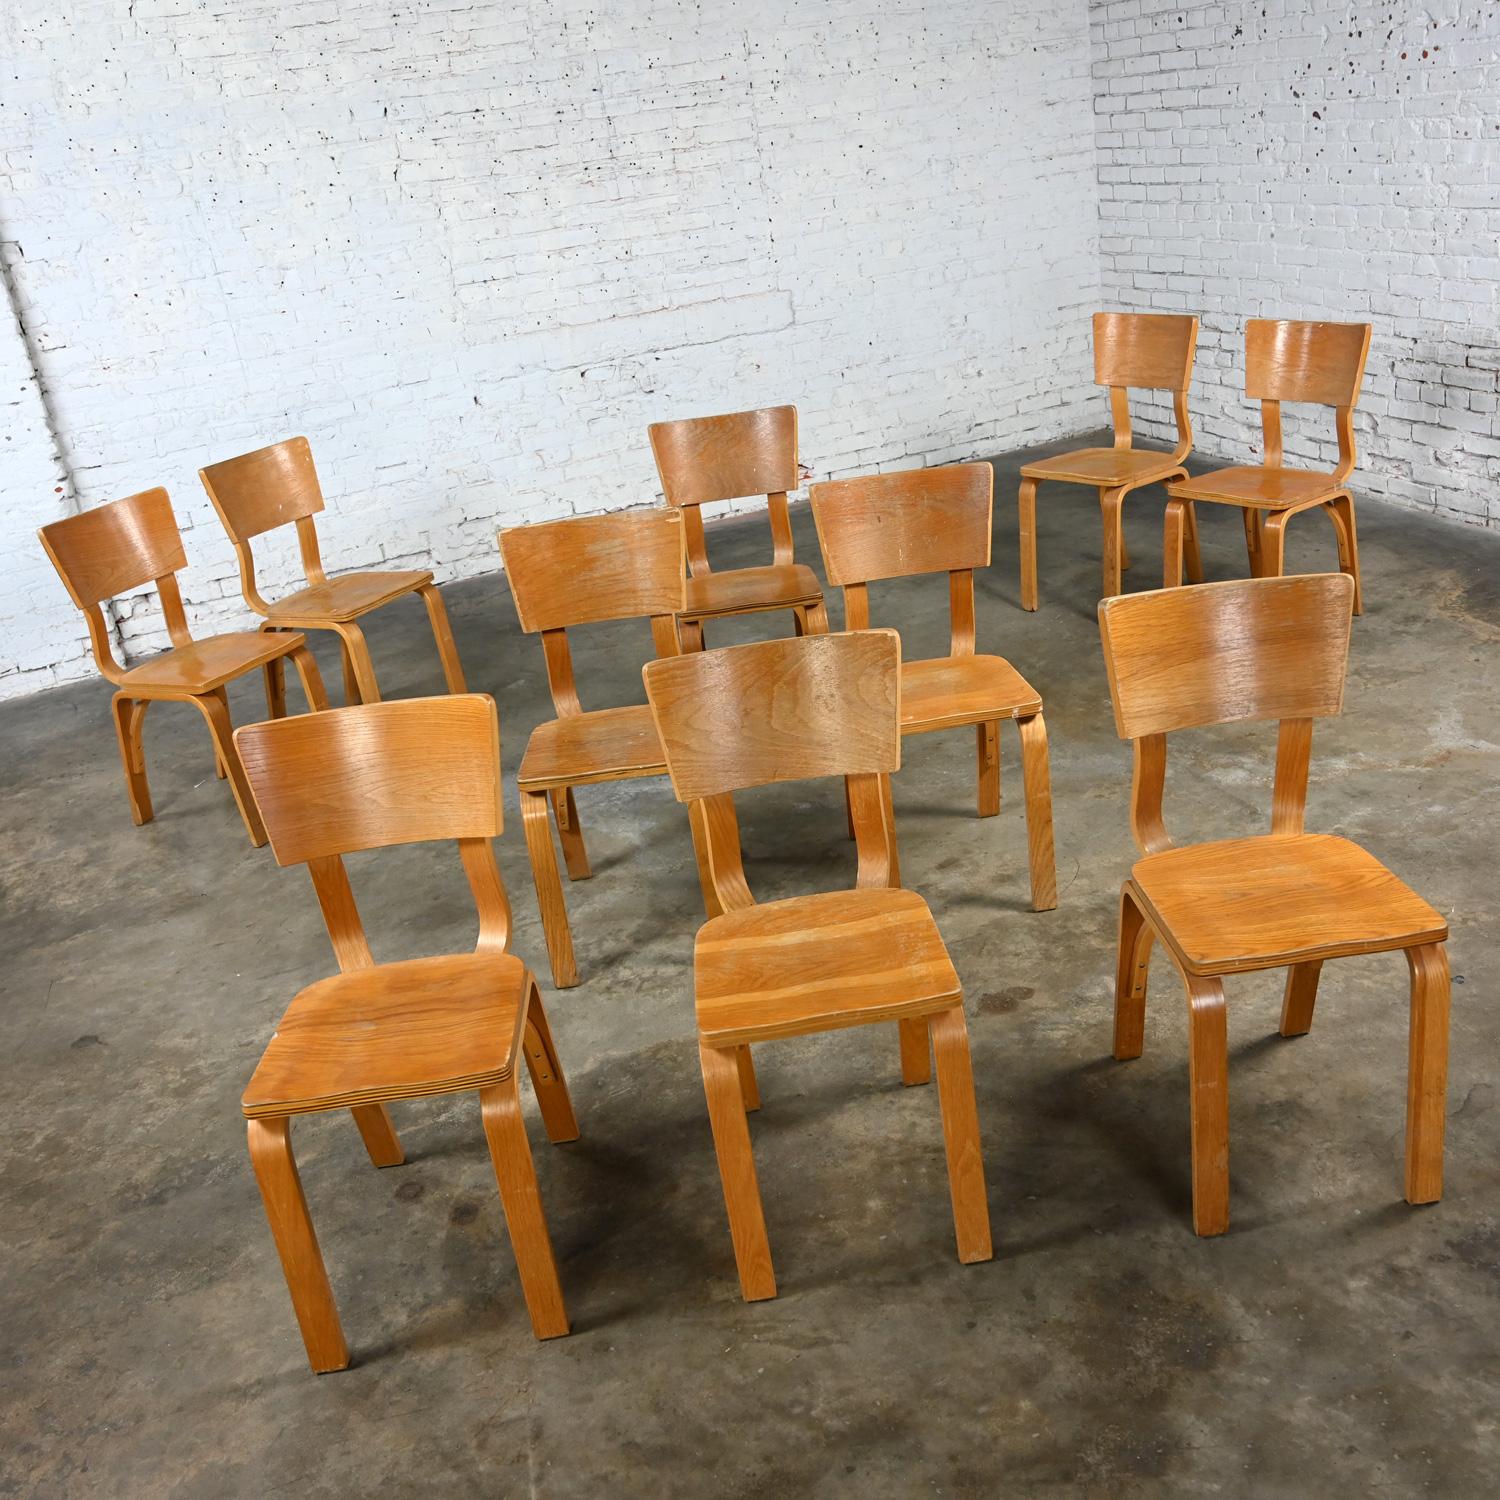 Merveilleuses chaises de salle à manger Thonet #1216-S17-B1 en contreplaqué de chêne courbé avec des sièges en forme de selle et un seul dossier en forme d'arc, ensemble de 10. Byit, en gardant à l'esprit qu'il s'agit d'une pièce vintage et non pas